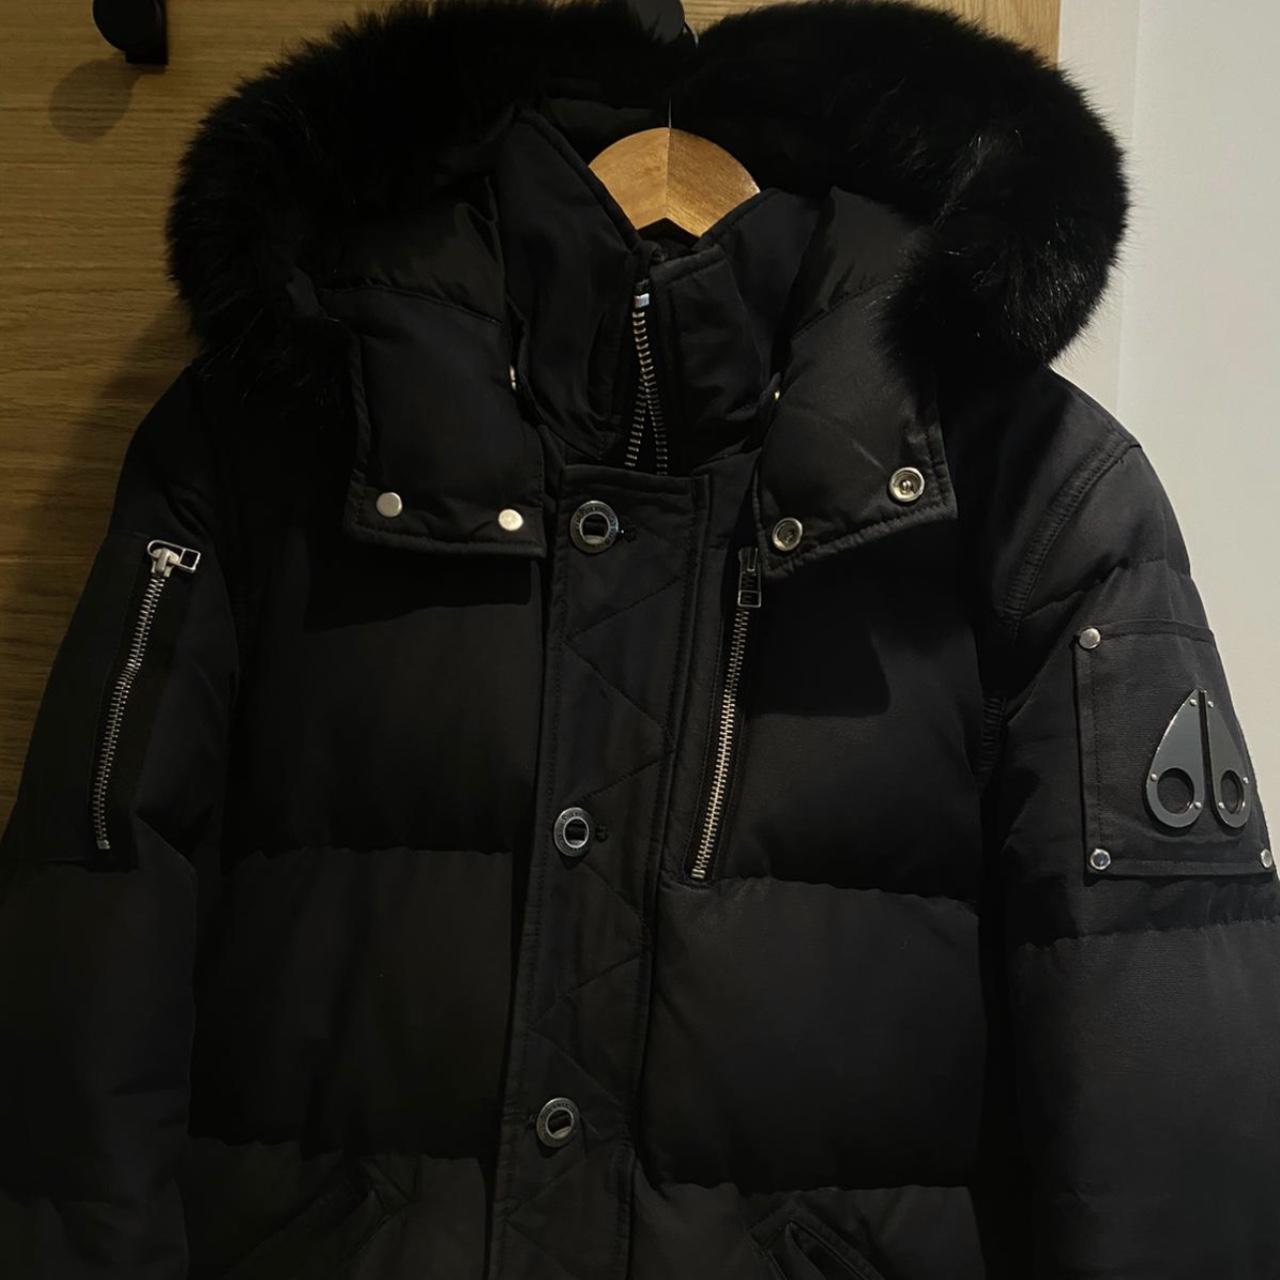 Navy moose knuckles coat, good condition, zip broken - Depop